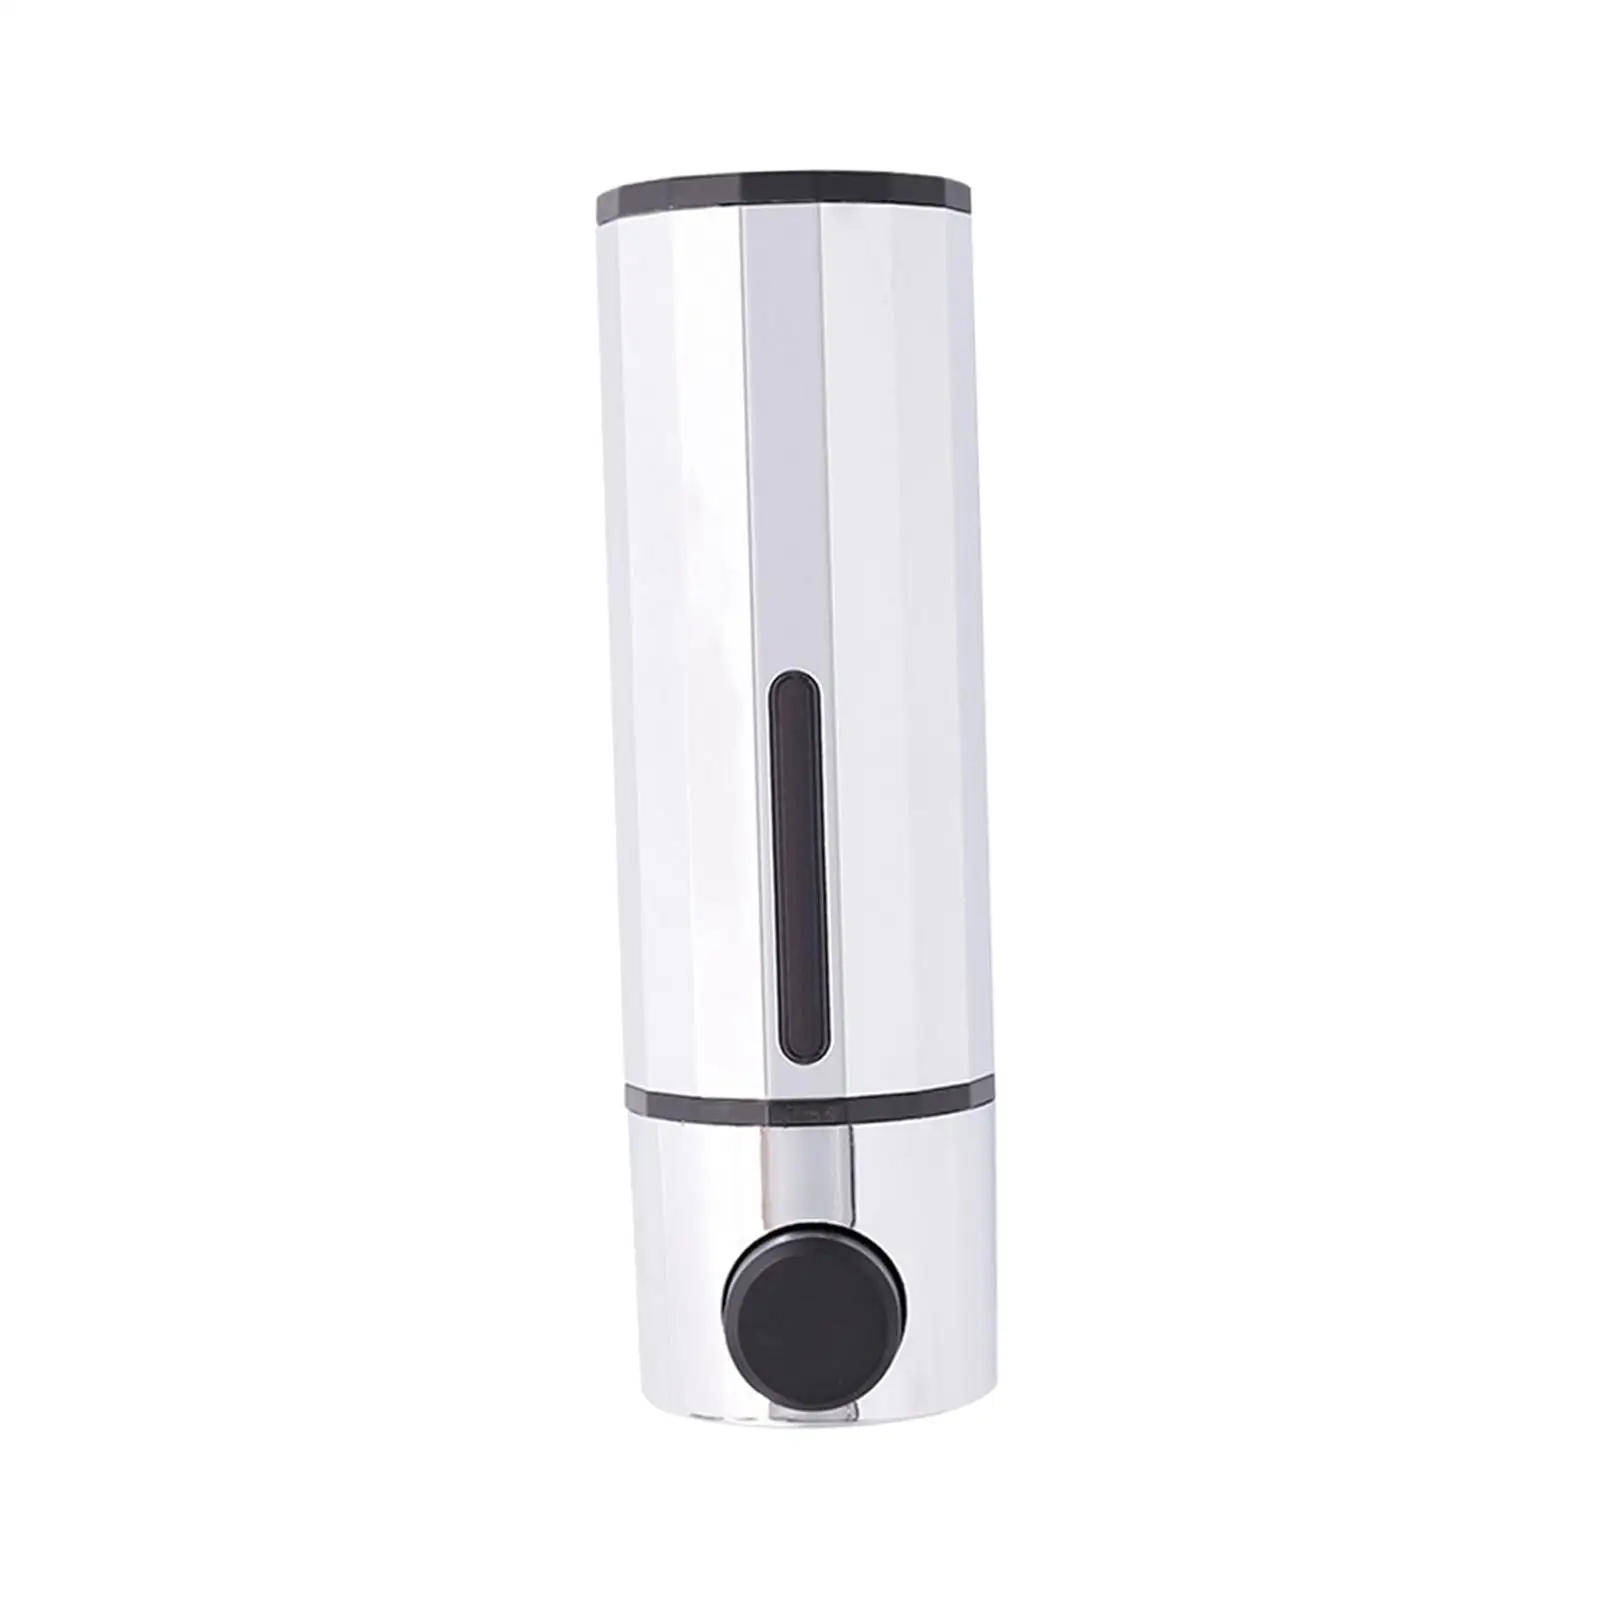 Soap Dispenser Sturdy Convenient Manual Liquid Pump Dispenser for RV Toilet